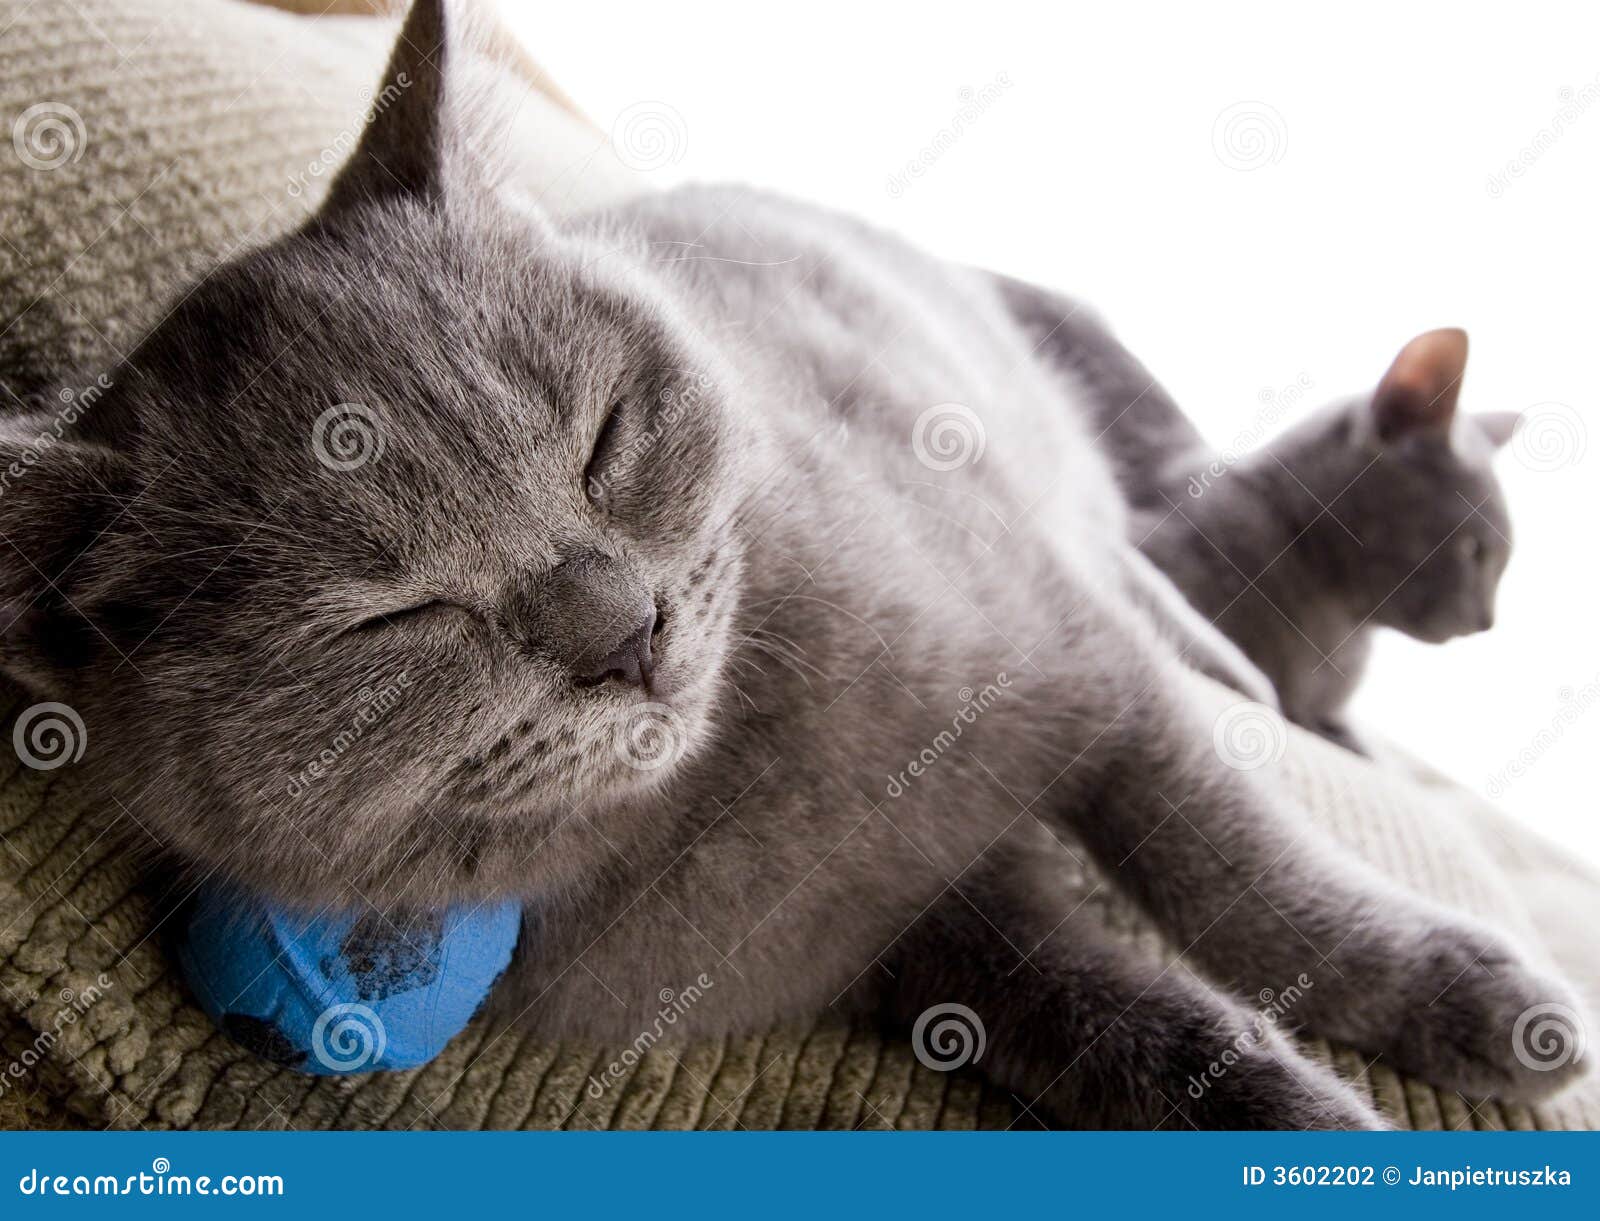 Sleepy cat stock photo. Image of animal, felis, beautiful - 3602202